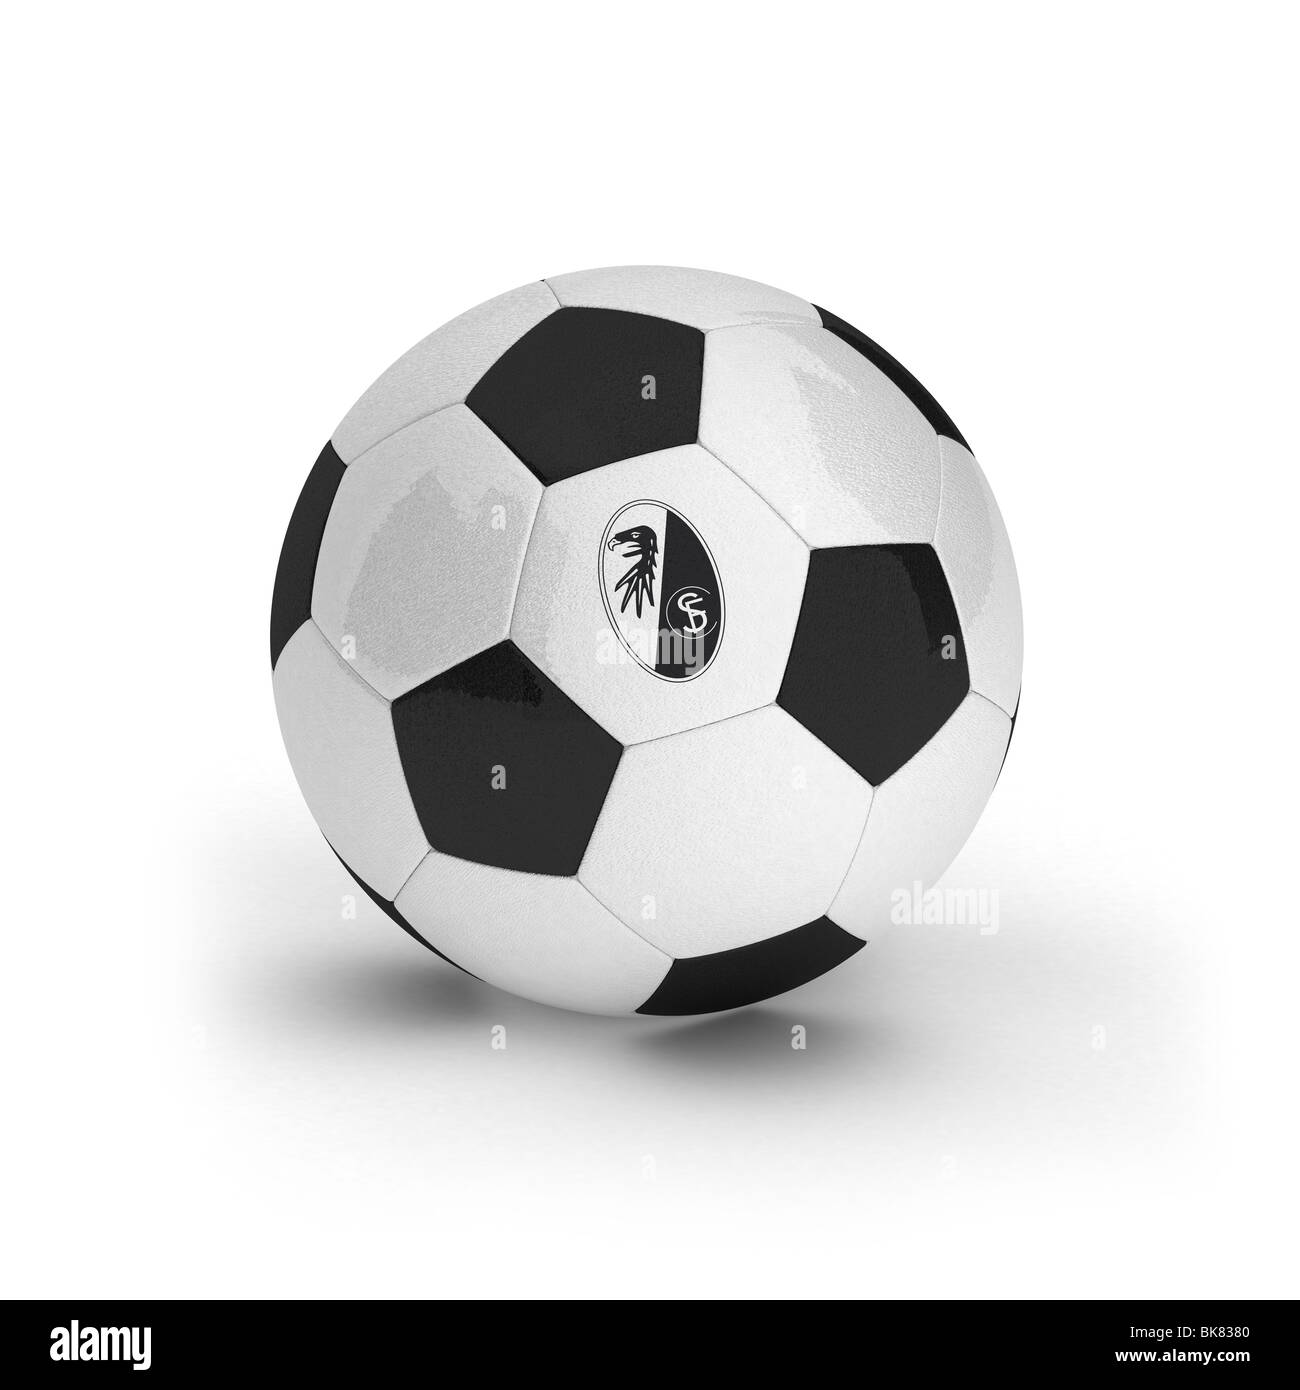 SC Freiburg-Emblem auf einem Fußball Stockfoto